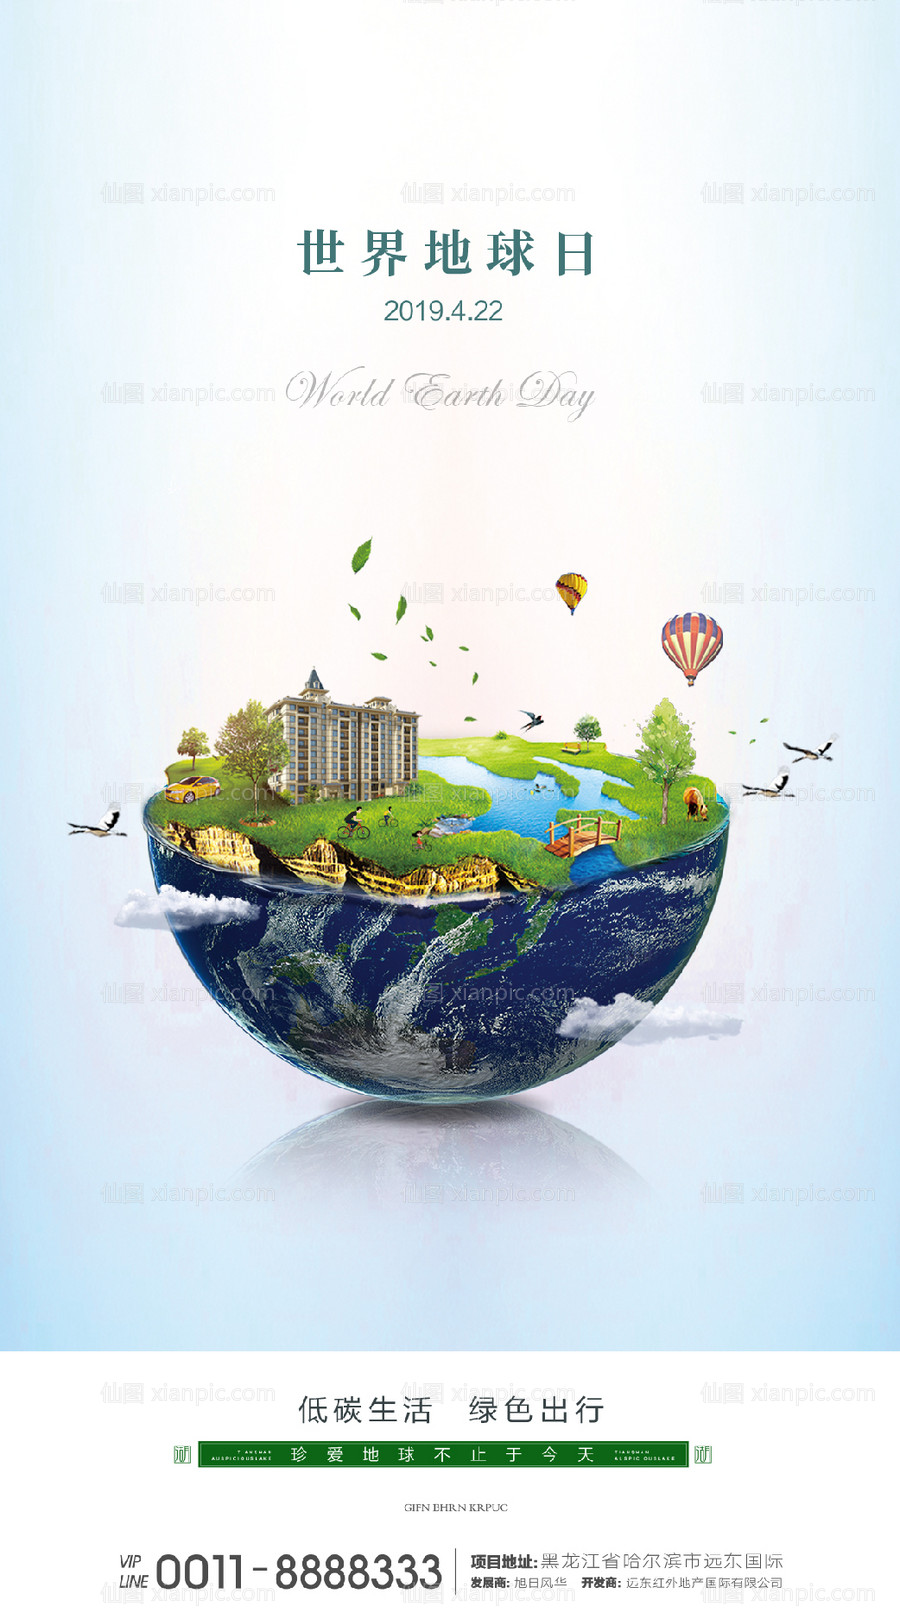 素材乐-世界地球日移动端海报